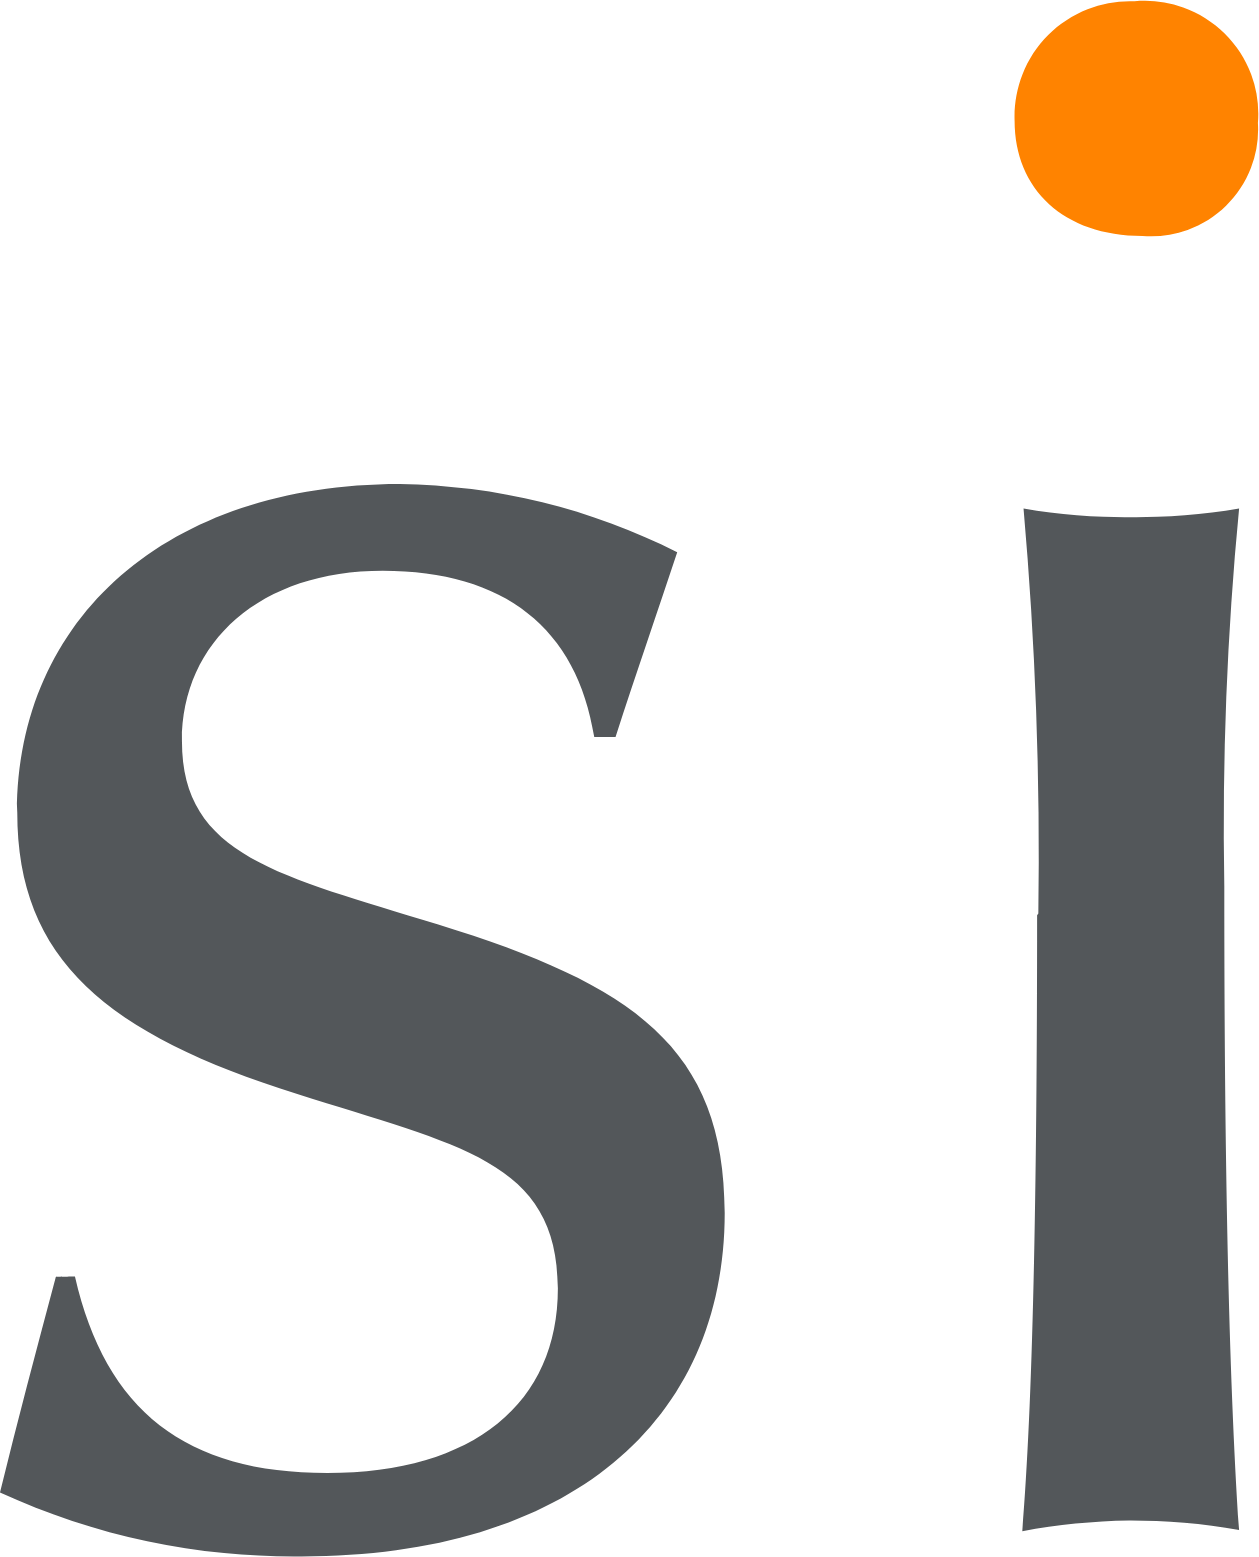 Sientra logo (transparent PNG)